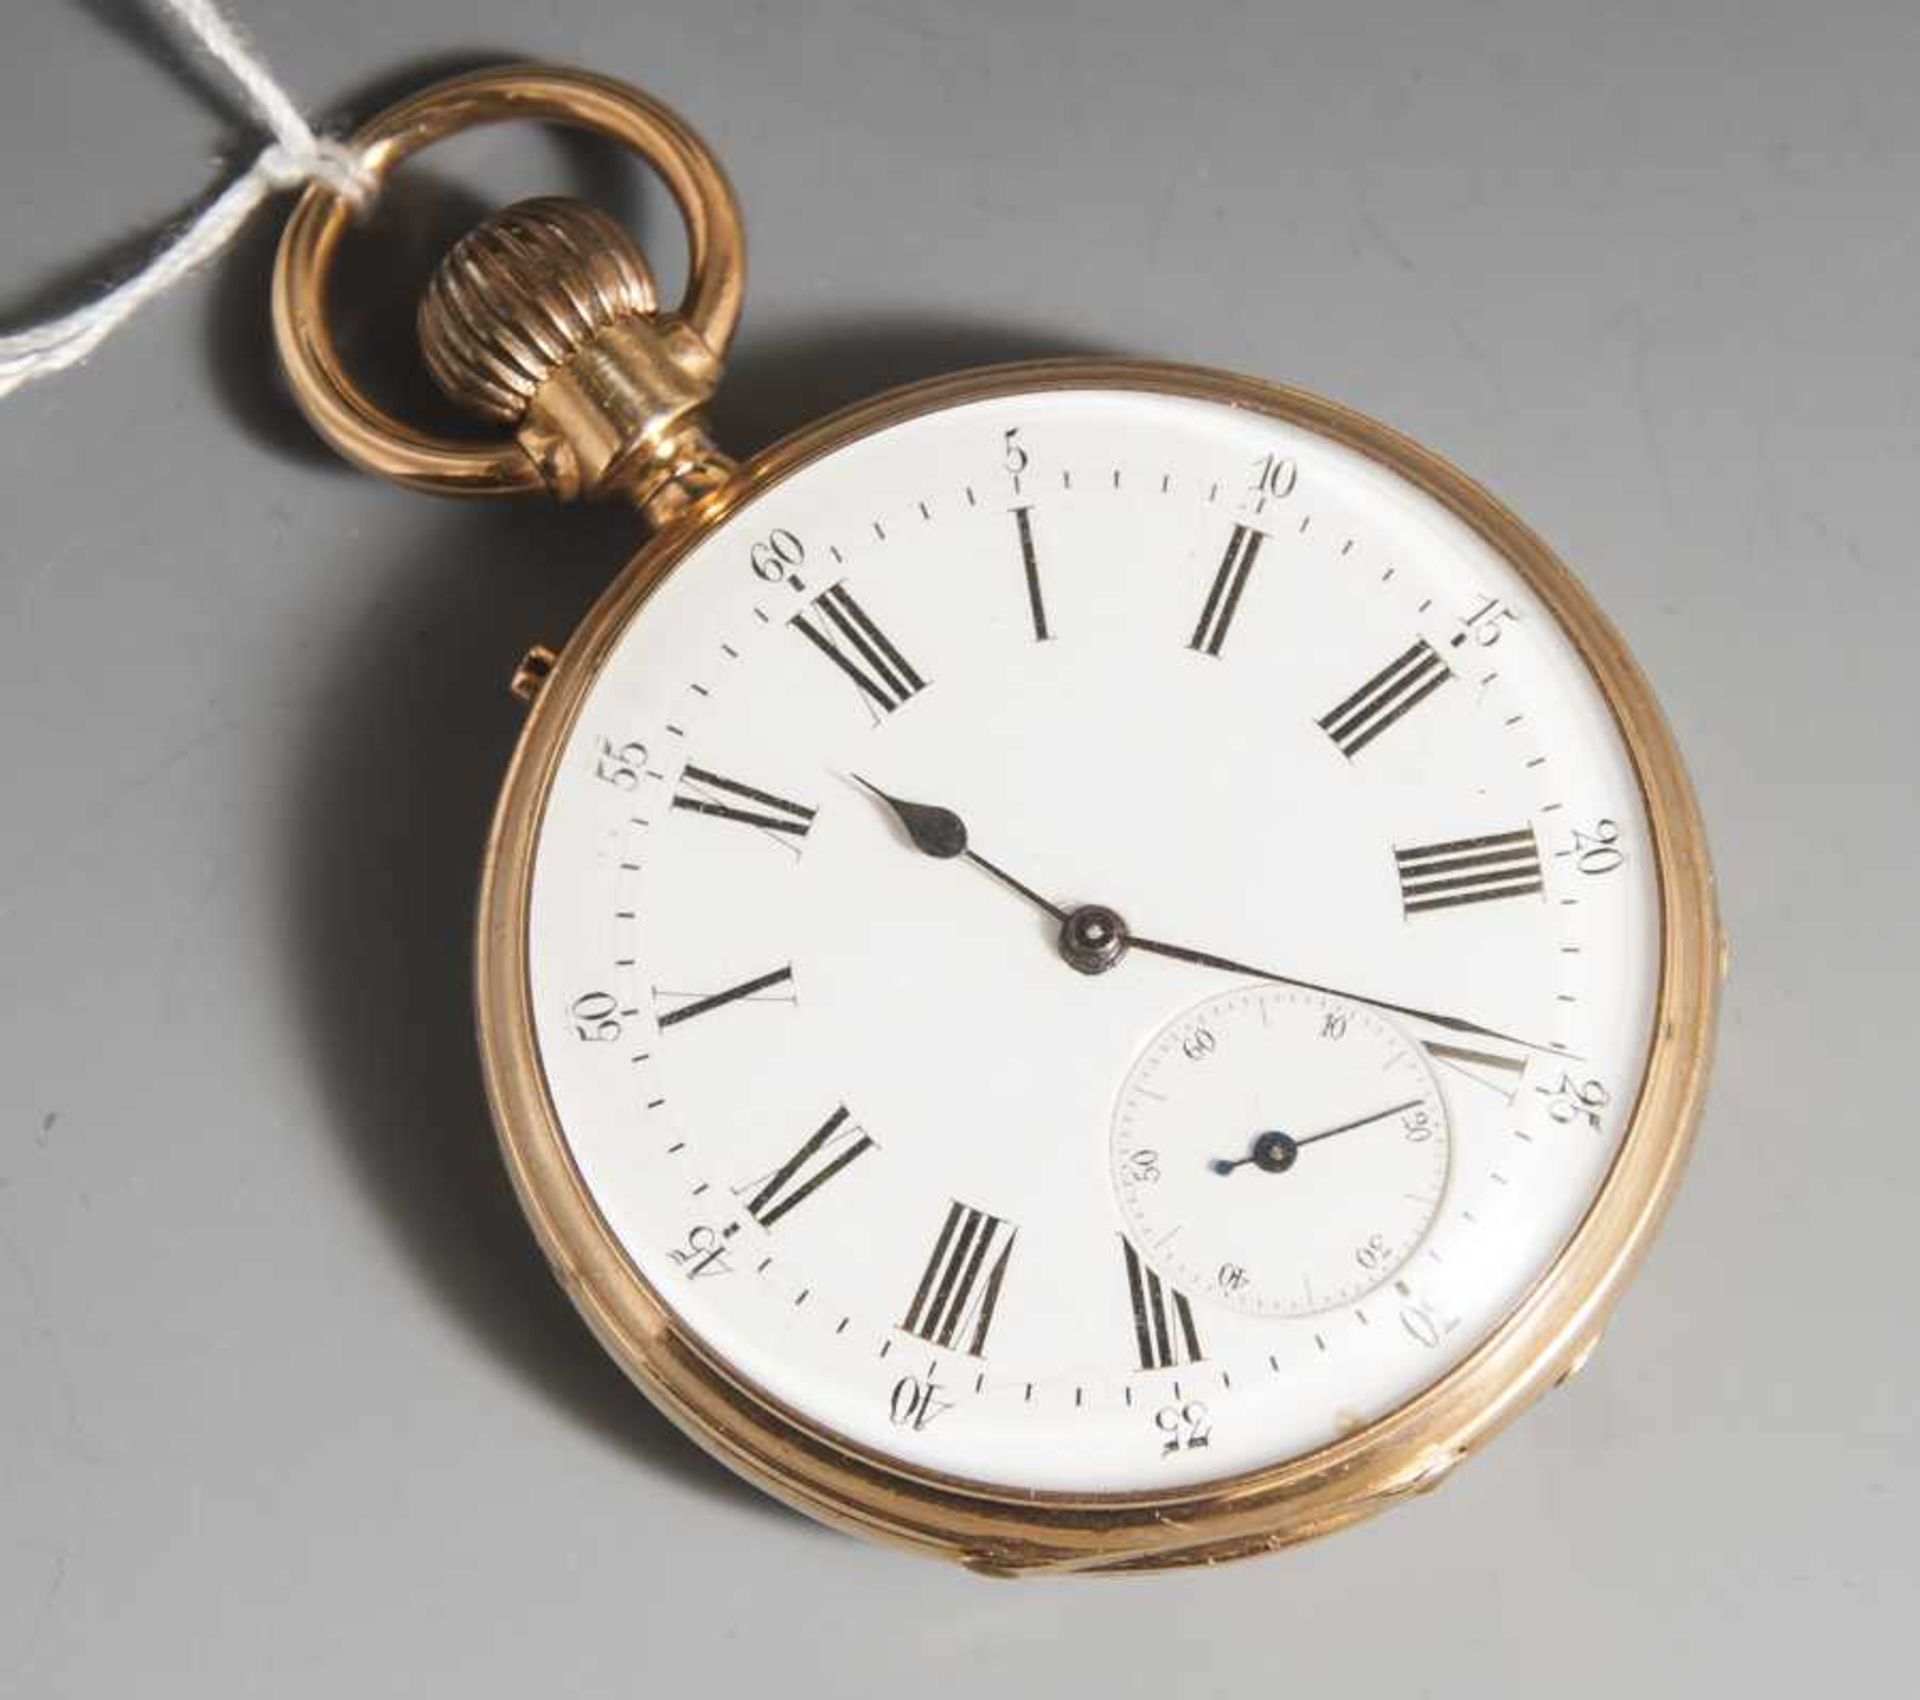 Taschenuhr, Aug. Mallet, Frankreich, 19. Jahrhundert, 18 kt Goldgehäuse. Gesamt ca. 74gr., Uhrwerk